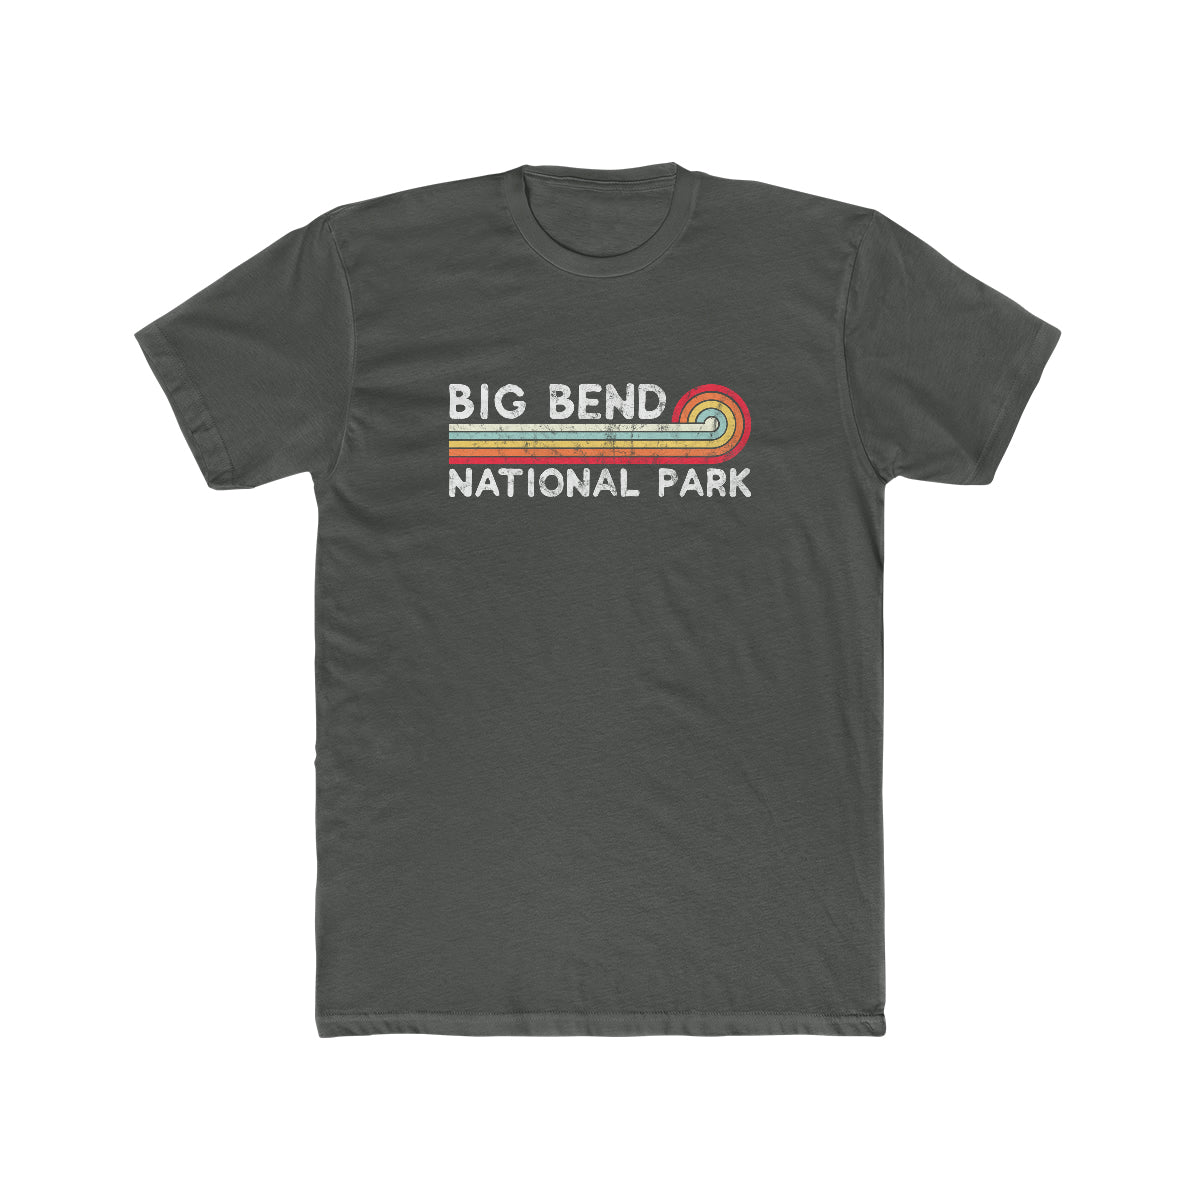 Big Bend National Park T-Shirt - Vintage Stretched Sunrise